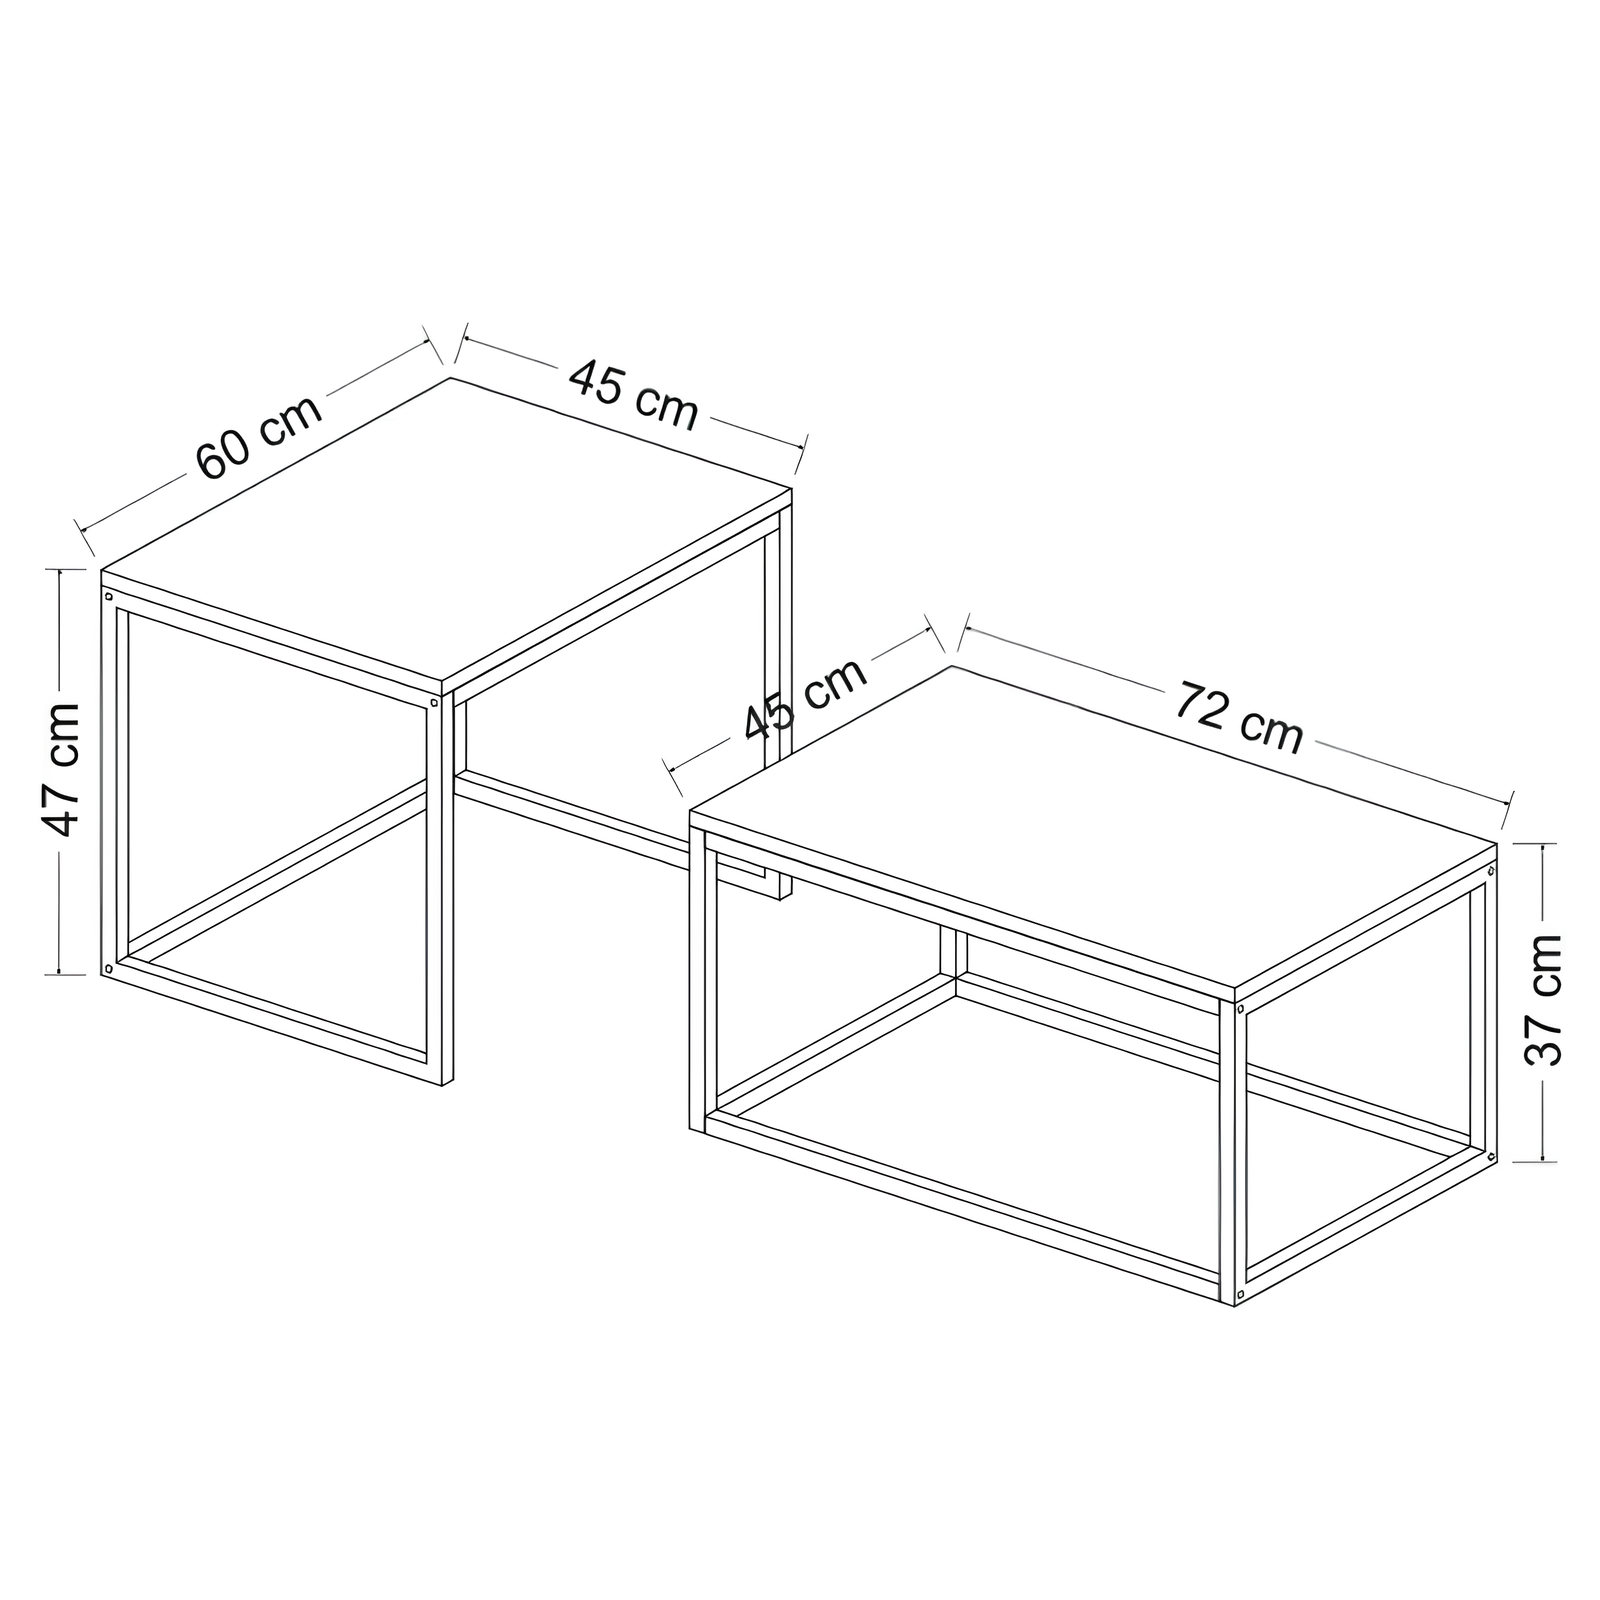 Tavolino da salotto Set 2pz design moderno in metallo e legno color noce e antracite - Leki